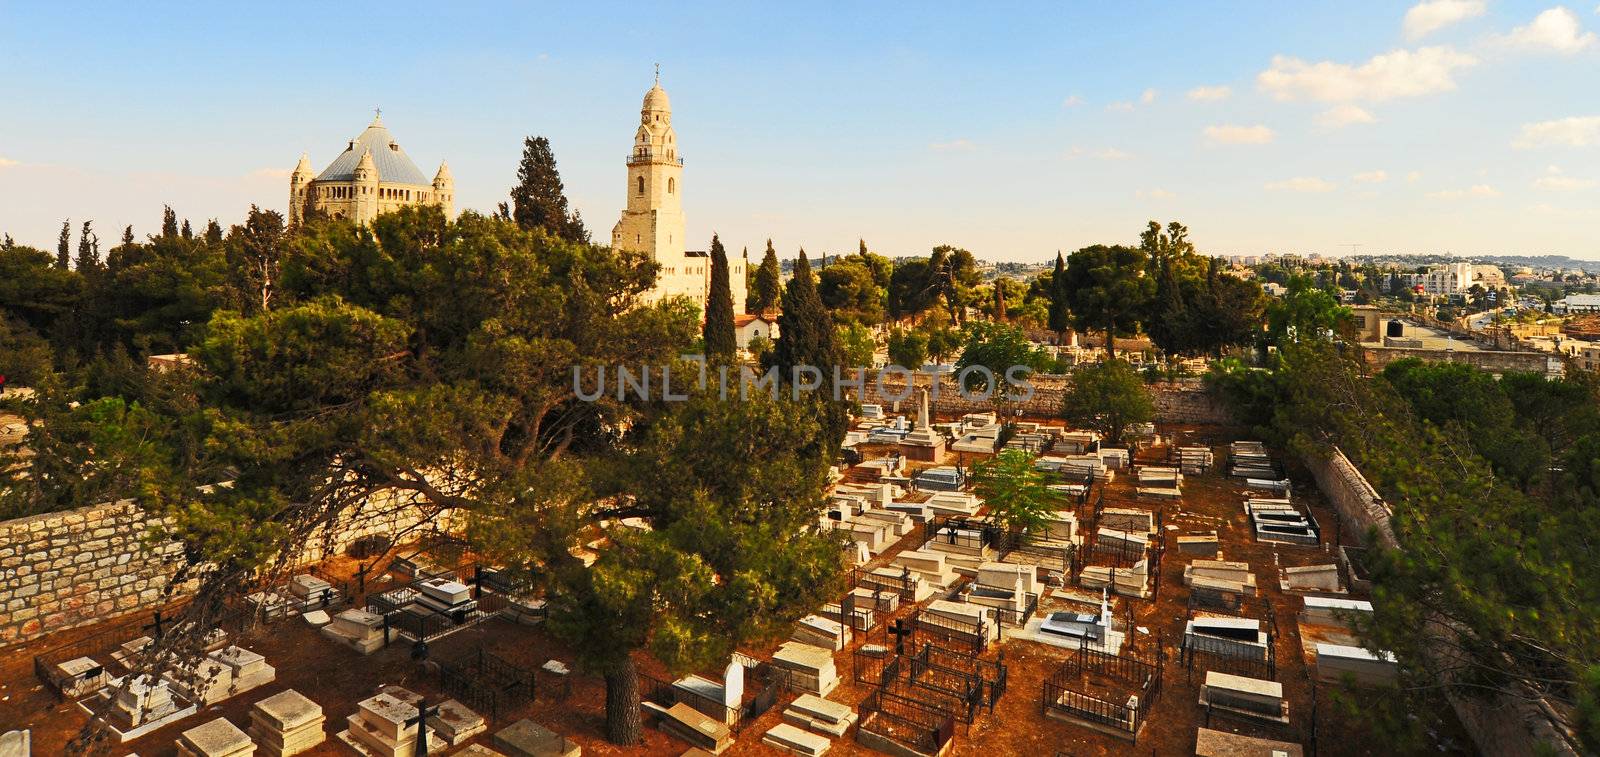 Jerusalem by gkuna